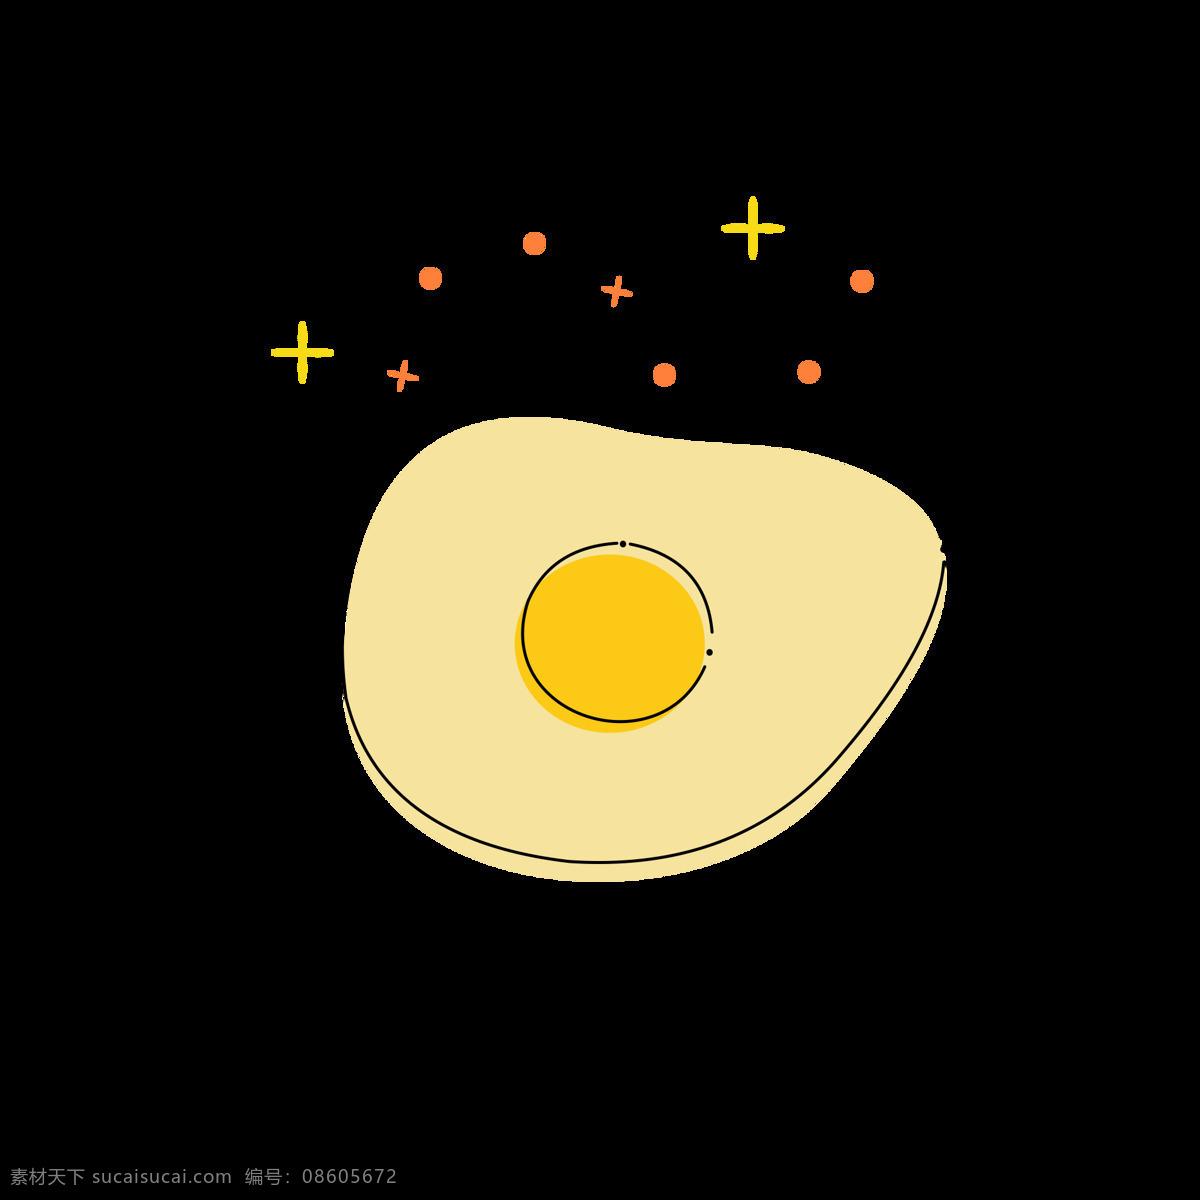 mbe 图标 元素 卡通 可爱 美食 荷包蛋 元素设计 简约 mbe图标